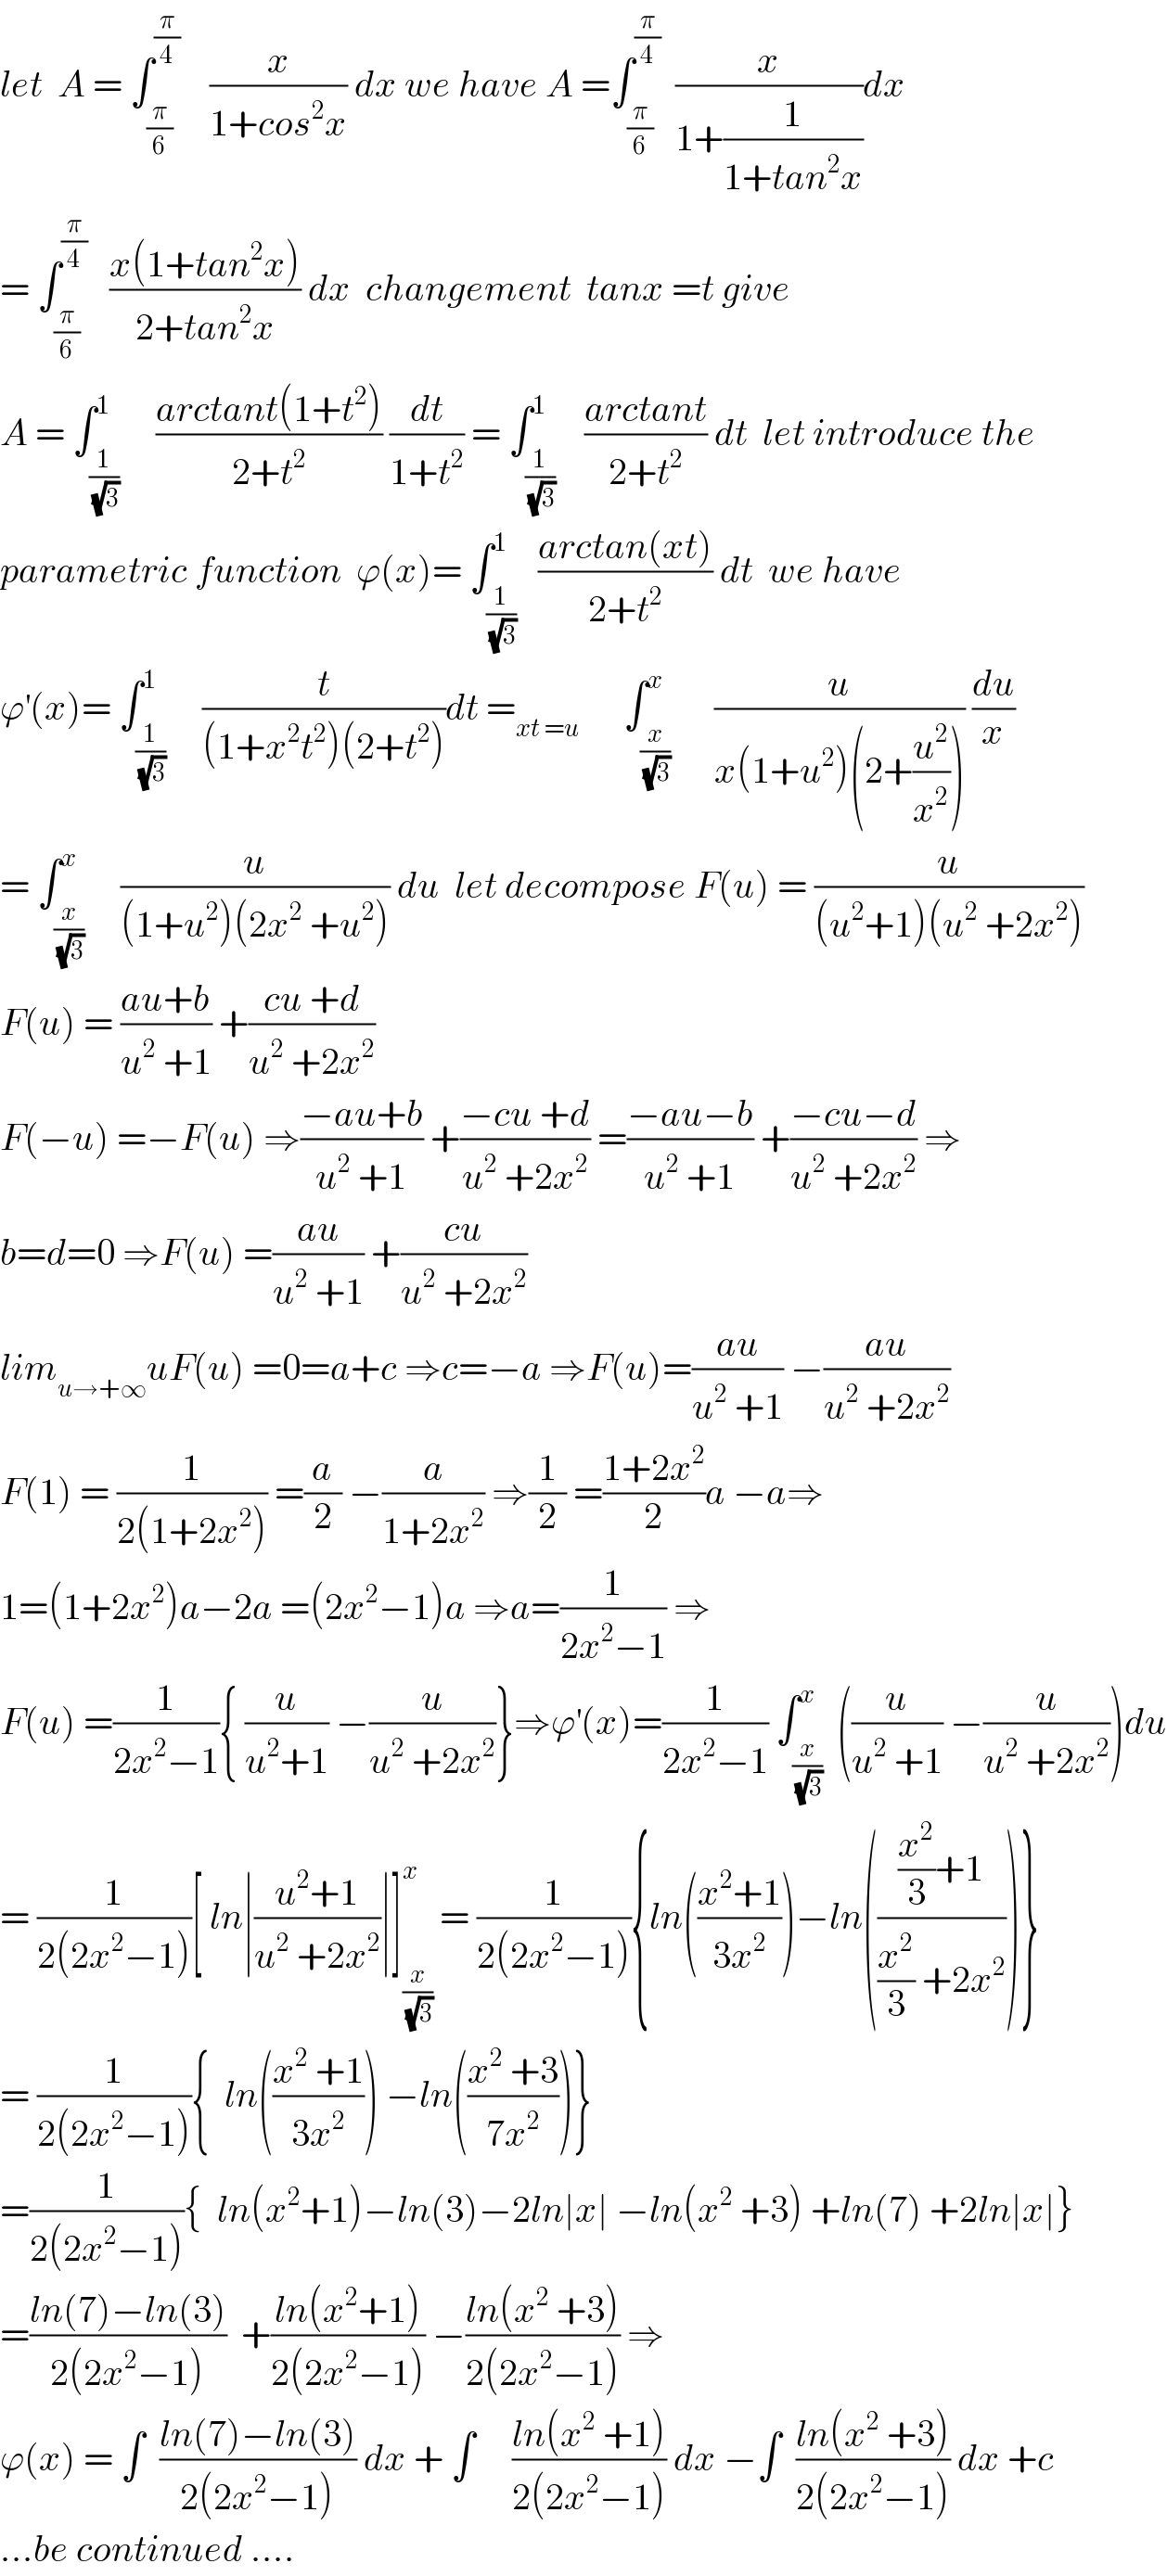 let  A = ∫_(π/6) ^(π/4)     (x/(1+cos^2 x)) dx we have A =∫_(π/6) ^(π/4)   (x/(1+(1/(1+tan^2 x))))dx  = ∫_(π/6) ^(π/4)    ((x(1+tan^2 x))/(2+tan^2 x)) dx  changement  tanx =t give  A = ∫_(1/(√3)) ^1     ((arctant(1+t^2 ))/(2+t^2 )) (dt/(1+t^2 )) = ∫_(1/(√3)) ^1    ((arctant)/(2+t^2 )) dt  let introduce the   parametric function  ϕ(x)= ∫_(1/(√3)) ^1   ((arctan(xt))/(2+t^2 )) dt  we have  ϕ^′ (x)= ∫_(1/(√3)) ^1     (t/((1+x^2 t^2 )(2+t^2 )))dt =_(xt =u)       ∫_(x/(√3)) ^x      (u/(x(1+u^2 )(2+(u^2 /x^2 )))) (du/x)  = ∫_(x/(√3)) ^x     (u/((1+u^2 )(2x^2  +u^2 ))) du  let decompose F(u) = (u/((u^2 +1)(u^2  +2x^2 )))  F(u) = ((au+b)/(u^2  +1)) +((cu +d)/(u^2  +2x^2 ))  F(−u) =−F(u) ⇒((−au+b)/(u^2  +1)) +((−cu +d)/(u^2  +2x^2 )) =((−au−b)/(u^2  +1)) +((−cu−d)/(u^2  +2x^2 )) ⇒  b=d=0 ⇒F(u) =((au)/(u^2  +1)) +((cu)/(u^2  +2x^2 ))  lim_(u→+∞) uF(u) =0=a+c ⇒c=−a ⇒F(u)=((au)/(u^2  +1)) −((au)/(u^2  +2x^2 ))  F(1) = (1/(2(1+2x^2 ))) =(a/2) −(a/(1+2x^2 )) ⇒(1/2) =((1+2x^2 )/2)a −a⇒  1=(1+2x^2 )a−2a =(2x^2 −1)a ⇒a=(1/(2x^2 −1)) ⇒  F(u) =(1/(2x^2 −1)){ (u/(u^2 +1)) −(u/(u^2  +2x^2 ))}⇒ϕ^′ (x)=(1/(2x^2 −1)) ∫_(x/(√3)) ^x  ((u/(u^2  +1)) −(u/(u^2  +2x^2 )))du  = (1/(2(2x^2 −1)))[ ln∣((u^2 +1)/(u^2  +2x^2 ))∣]_(x/(√3)) ^x  = (1/(2(2x^2 −1))){ln(((x^2 +1)/(3x^2 )))−ln((((x^2 /3)+1)/((x^2 /3) +2x^2 )))}  = (1/(2(2x^2 −1))){  ln(((x^2  +1)/(3x^2 ))) −ln(((x^2  +3)/(7x^2 )))}  =(1/(2(2x^2 −1))){  ln(x^2 +1)−ln(3)−2ln∣x∣ −ln(x^2  +3) +ln(7) +2ln∣x∣}  =((ln(7)−ln(3))/(2(2x^2 −1)))  +((ln(x^2 +1))/(2(2x^2 −1))) −((ln(x^2  +3))/(2(2x^2 −1))) ⇒  ϕ(x) = ∫  ((ln(7)−ln(3))/(2(2x^2 −1))) dx + ∫     ((ln(x^2  +1))/(2(2x^2 −1))) dx −∫  ((ln(x^2  +3))/(2(2x^2 −1))) dx +c  ...be continued ....  